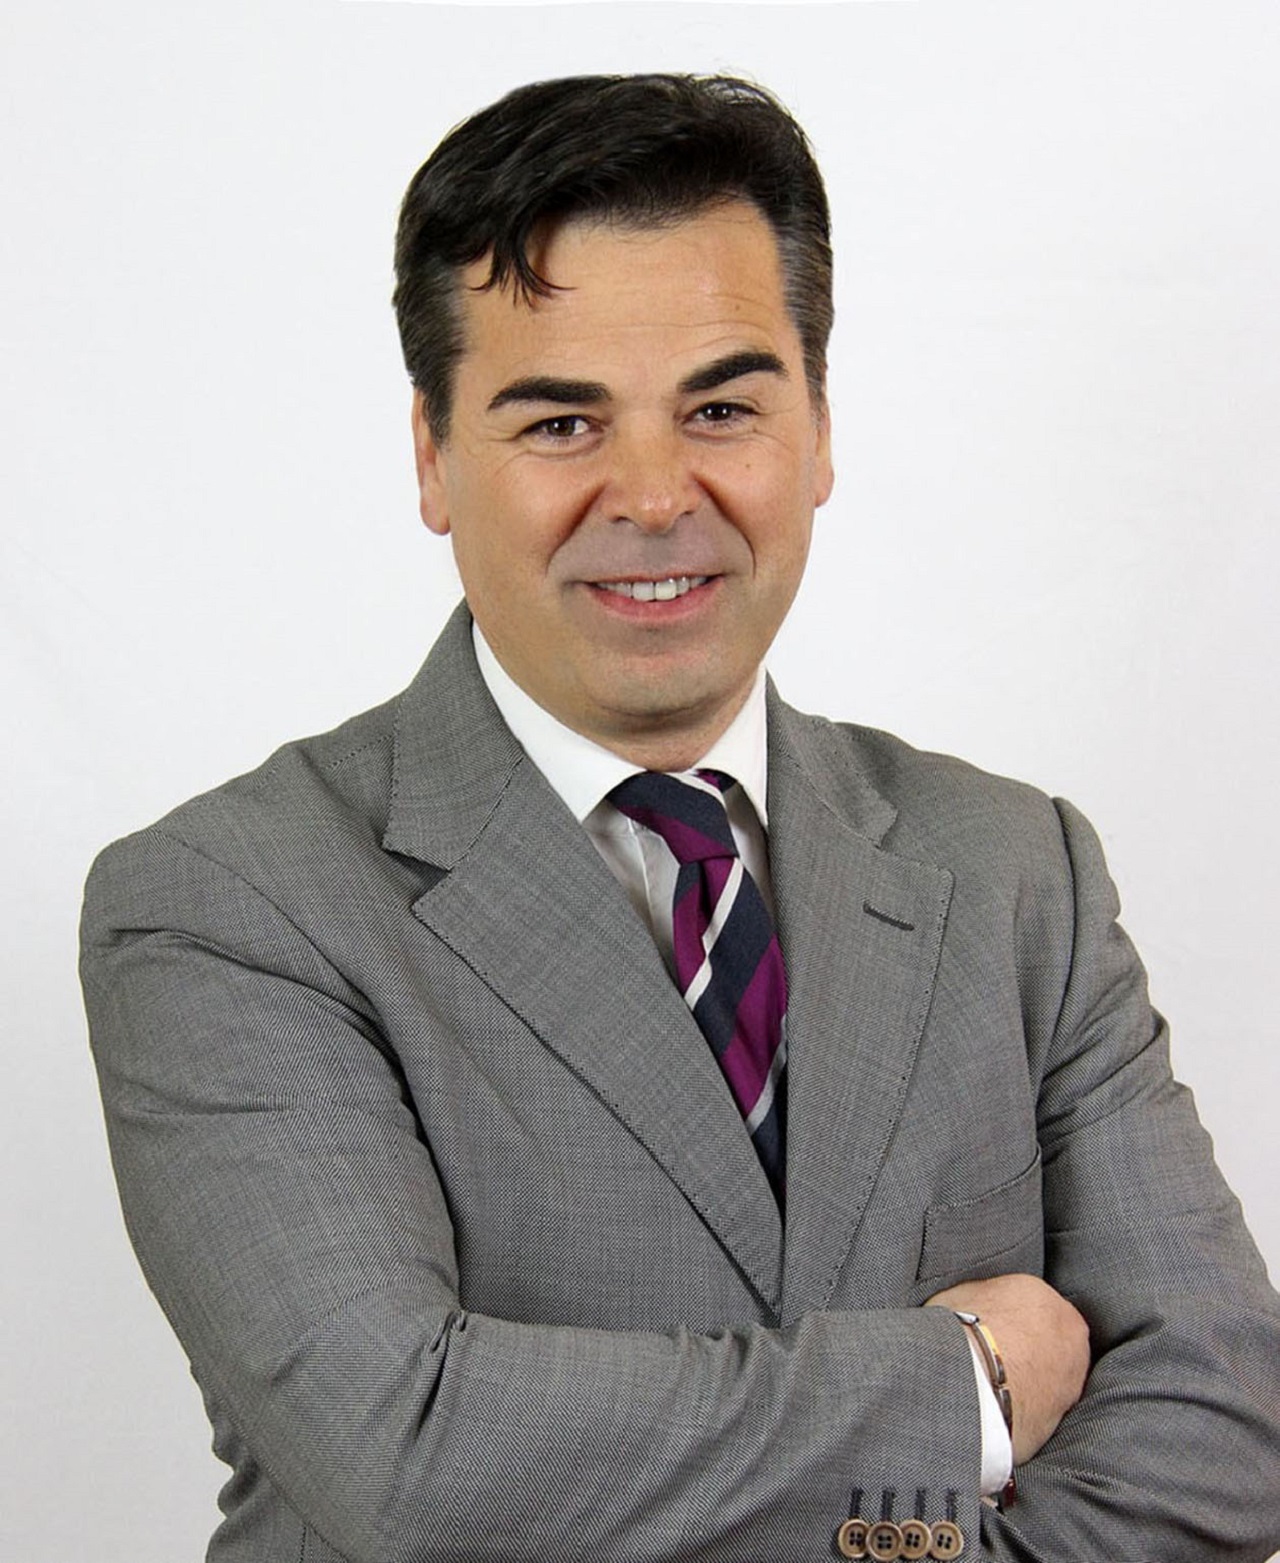 Franco Landella, il sindaco dimissionario di Foggia